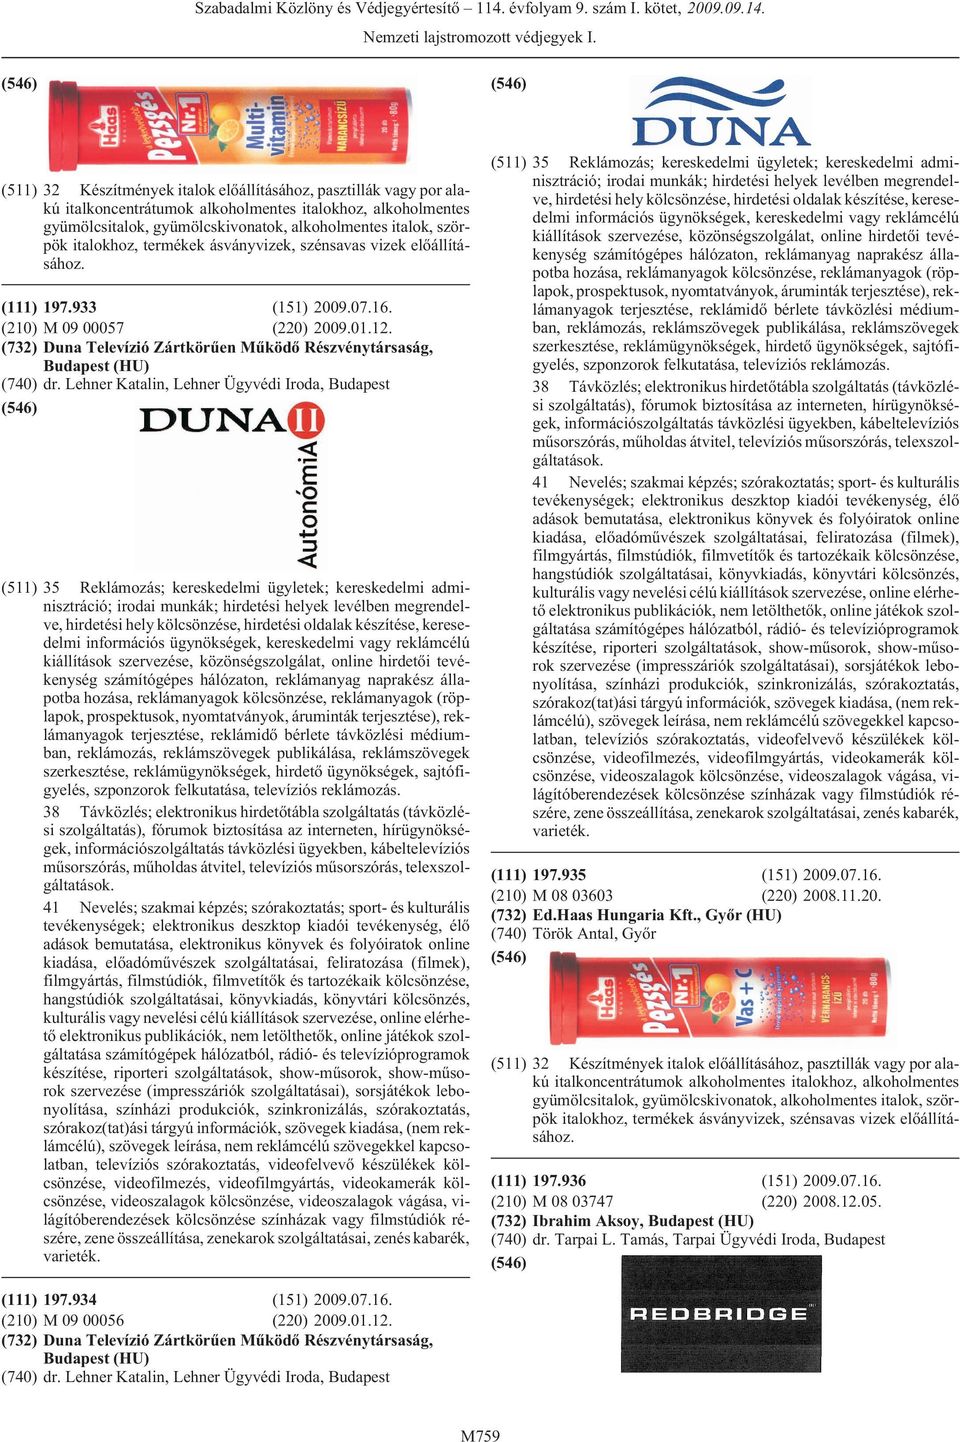 (732) Duna Televízió Zártkörûen Mûködõ Részvénytársaság, (HU) (740) dr.